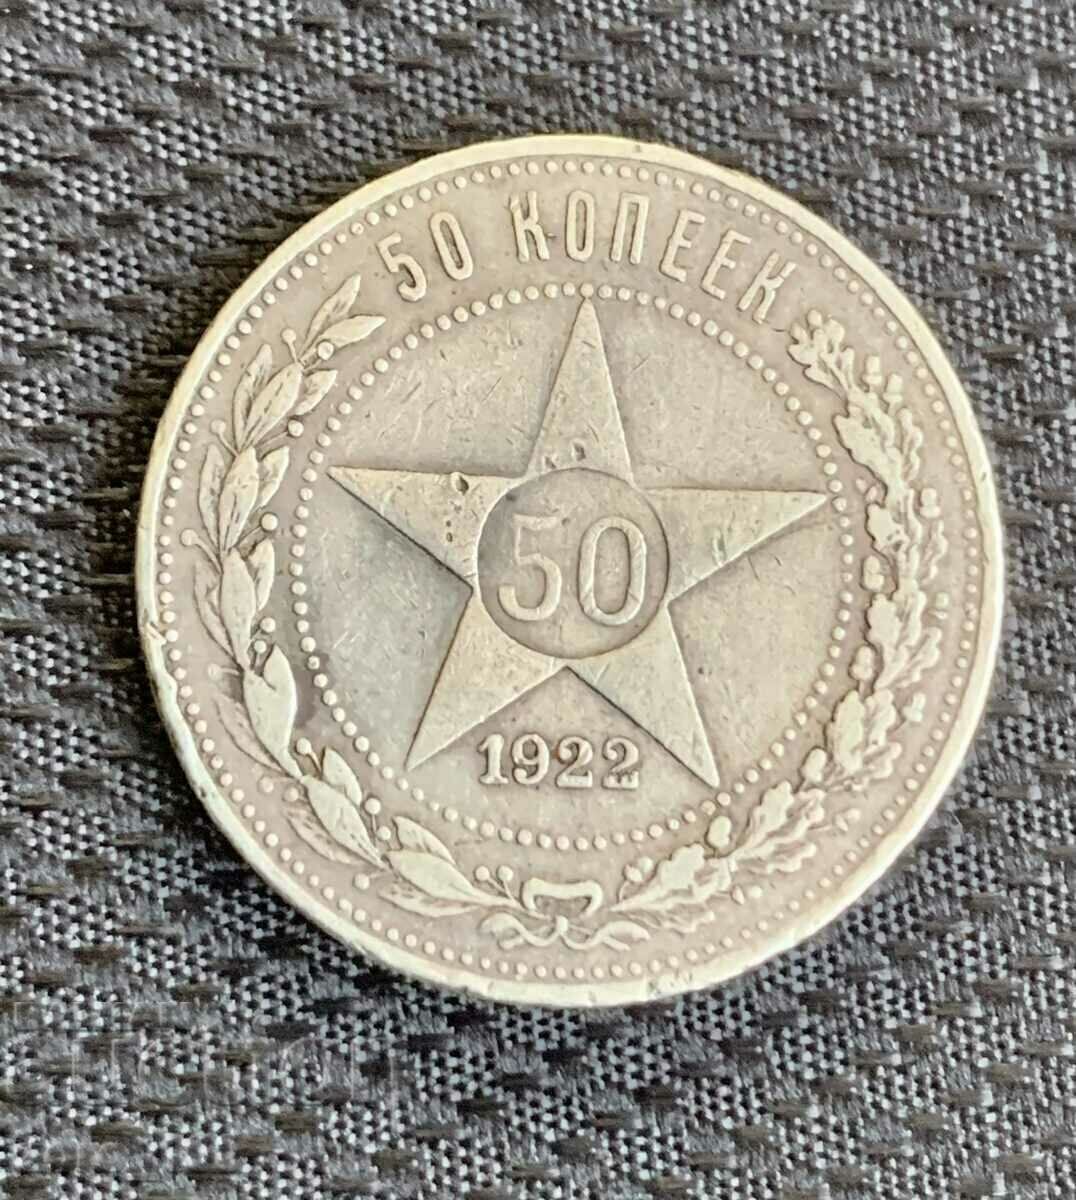 50 kopecks 1922, silver